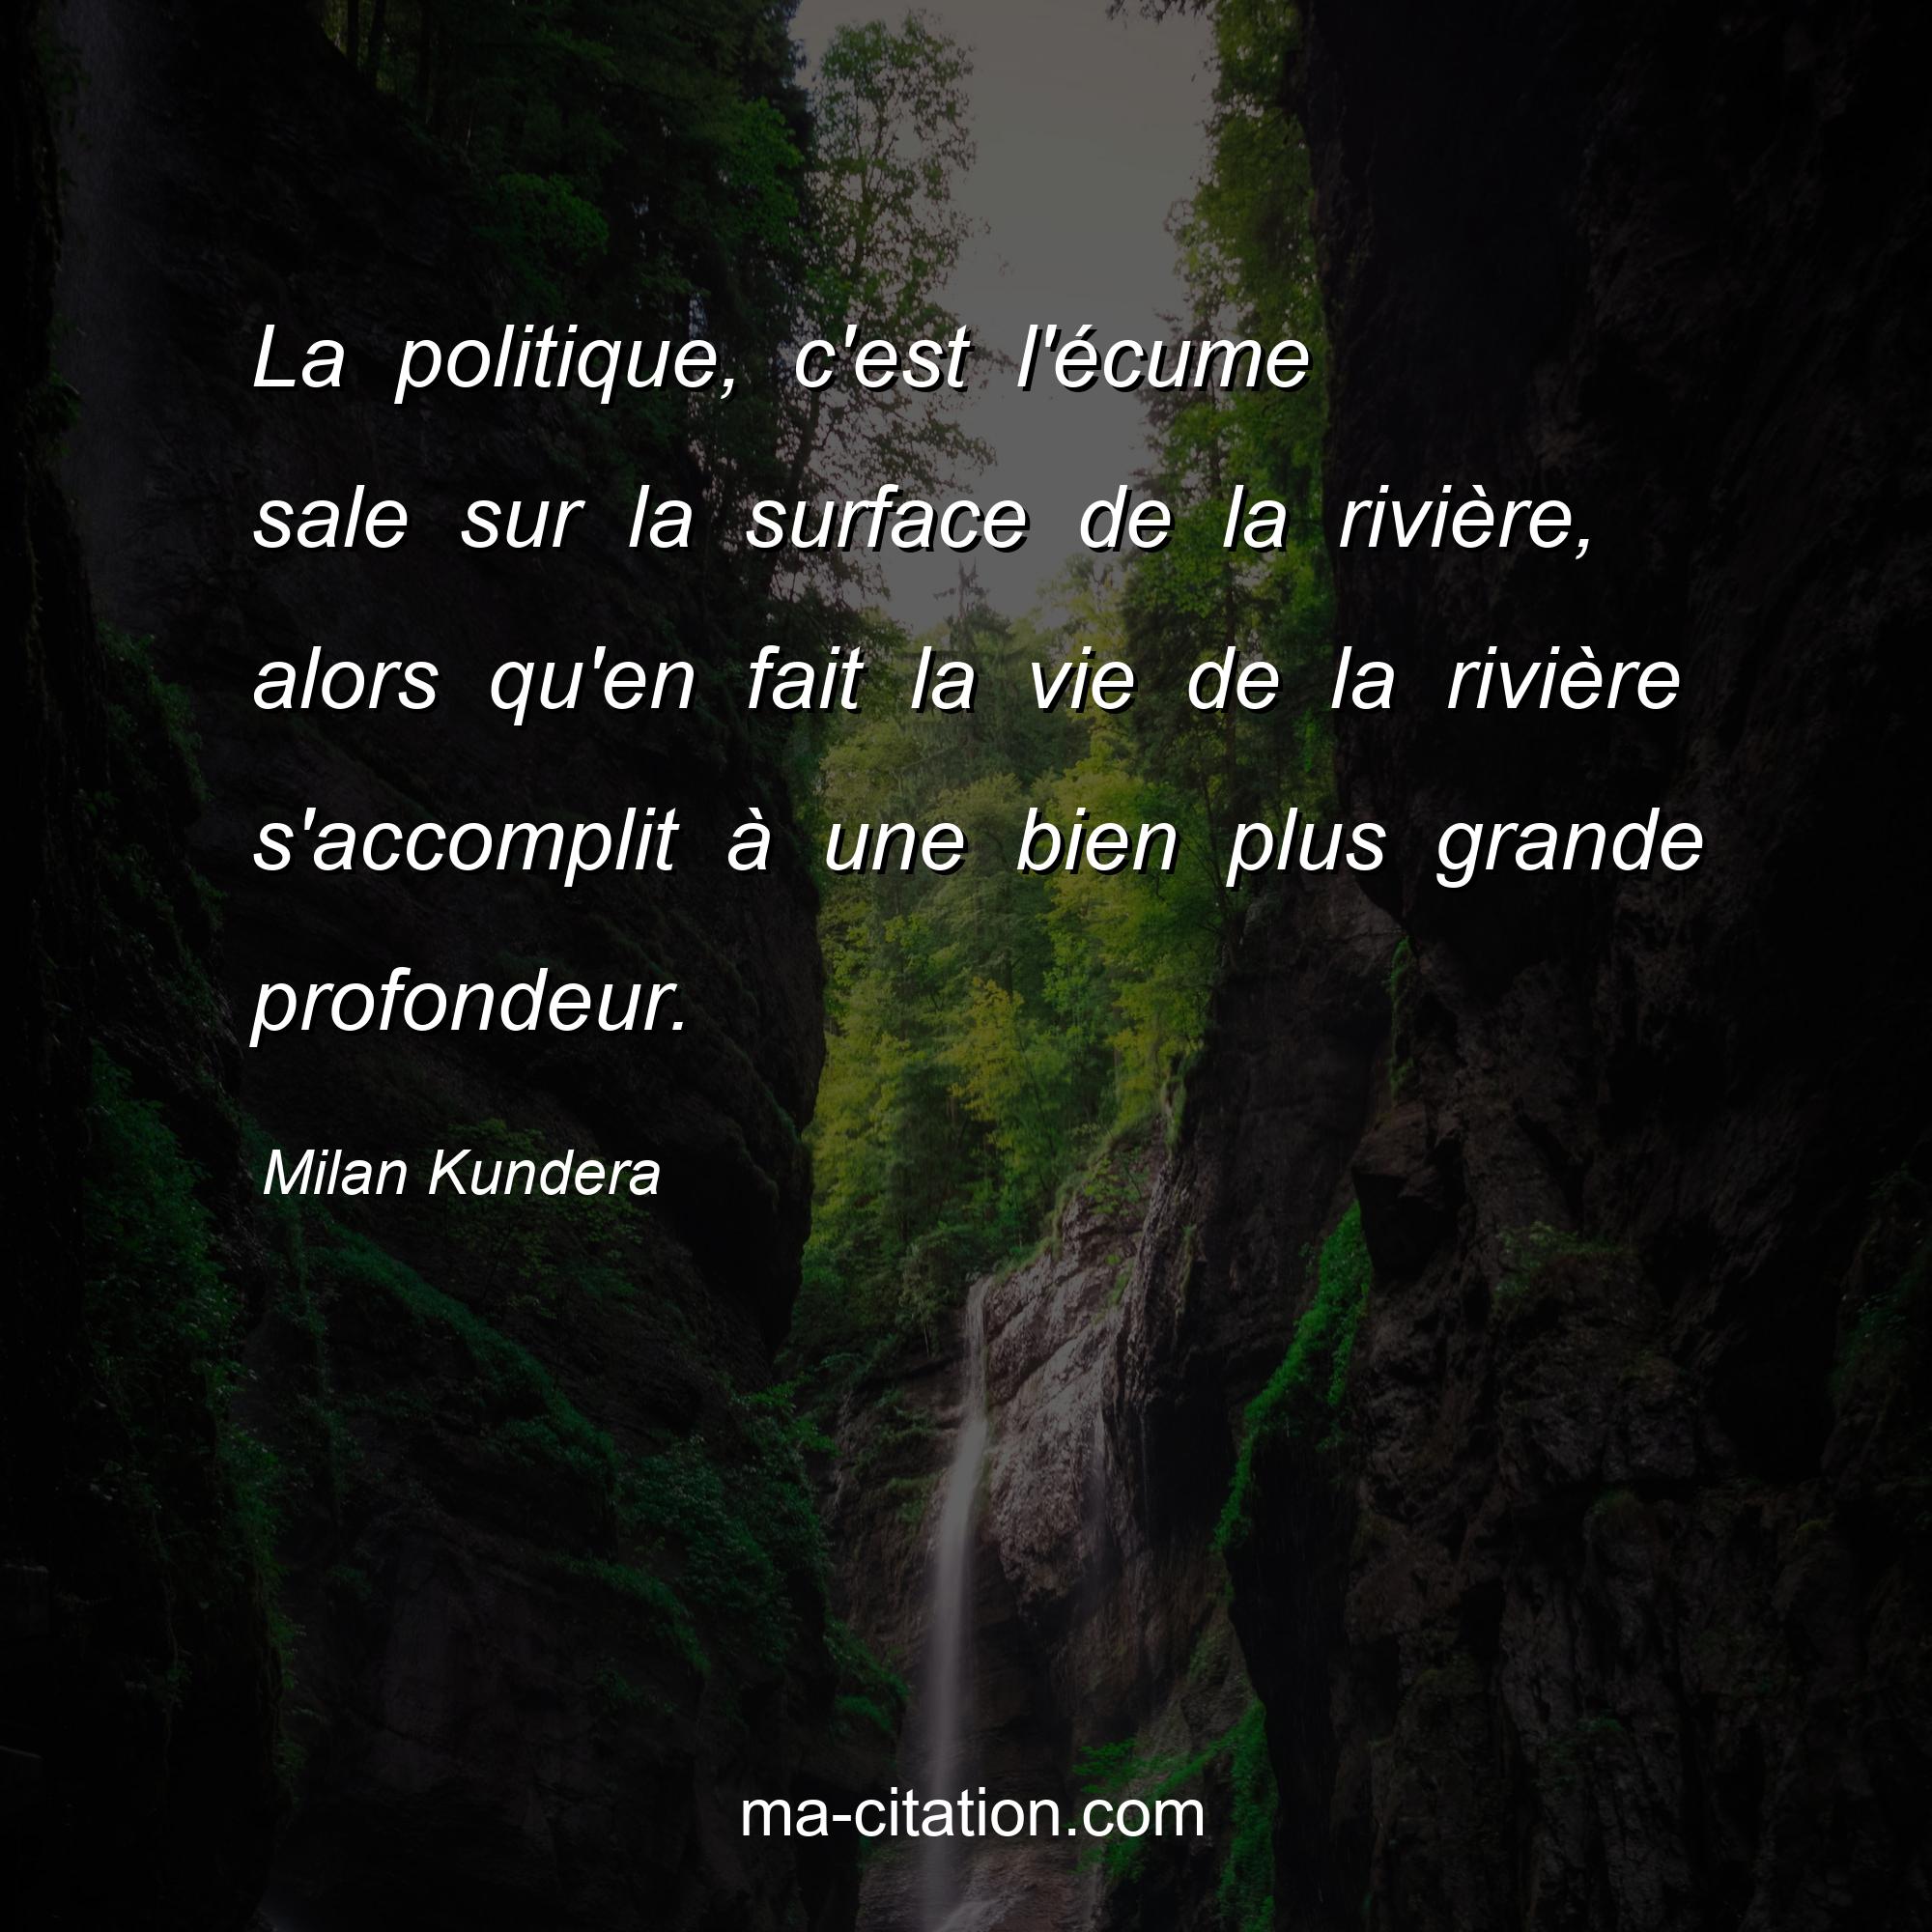 Milan Kundera : La politique, c'est l'écume sale sur la surface de la rivière, alors qu'en fait la vie de la rivière s'accomplit à une bien plus grande profondeur.